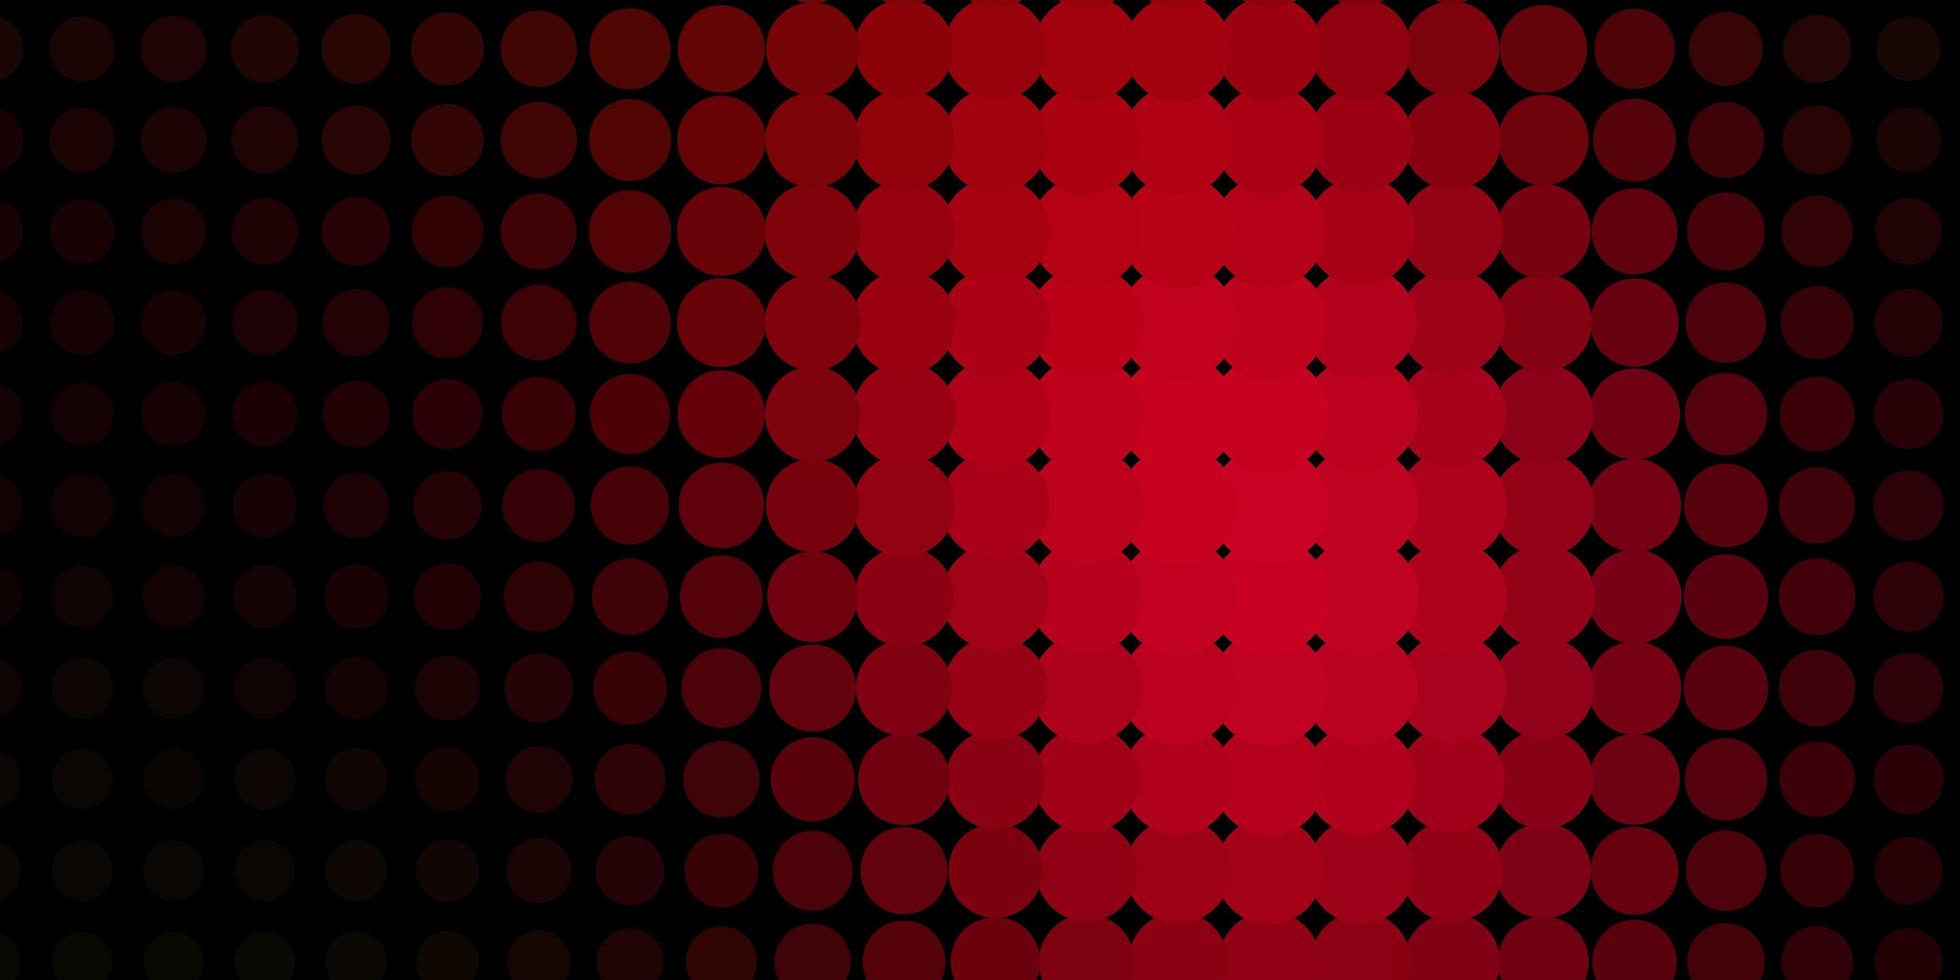 modello vettoriale rosso scuro con cerchi.